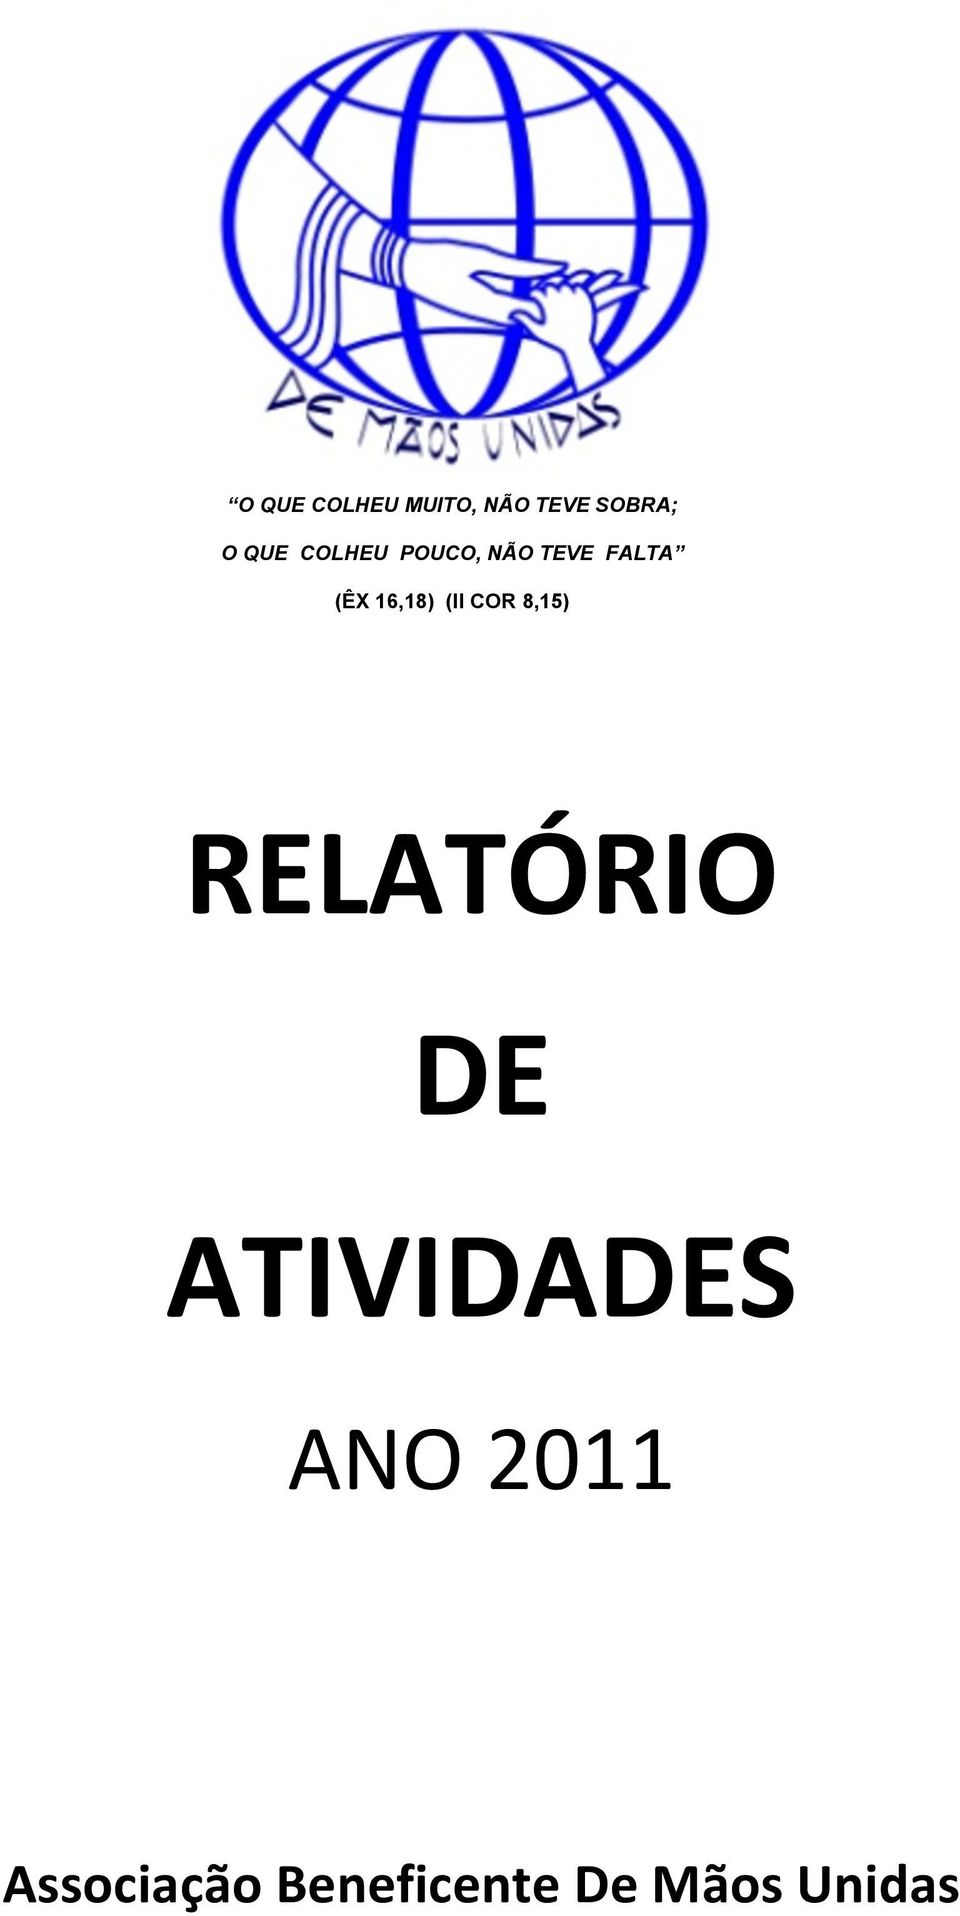 (II COR 8,15) RELATÓRIO DE ATIVIDADES ANO